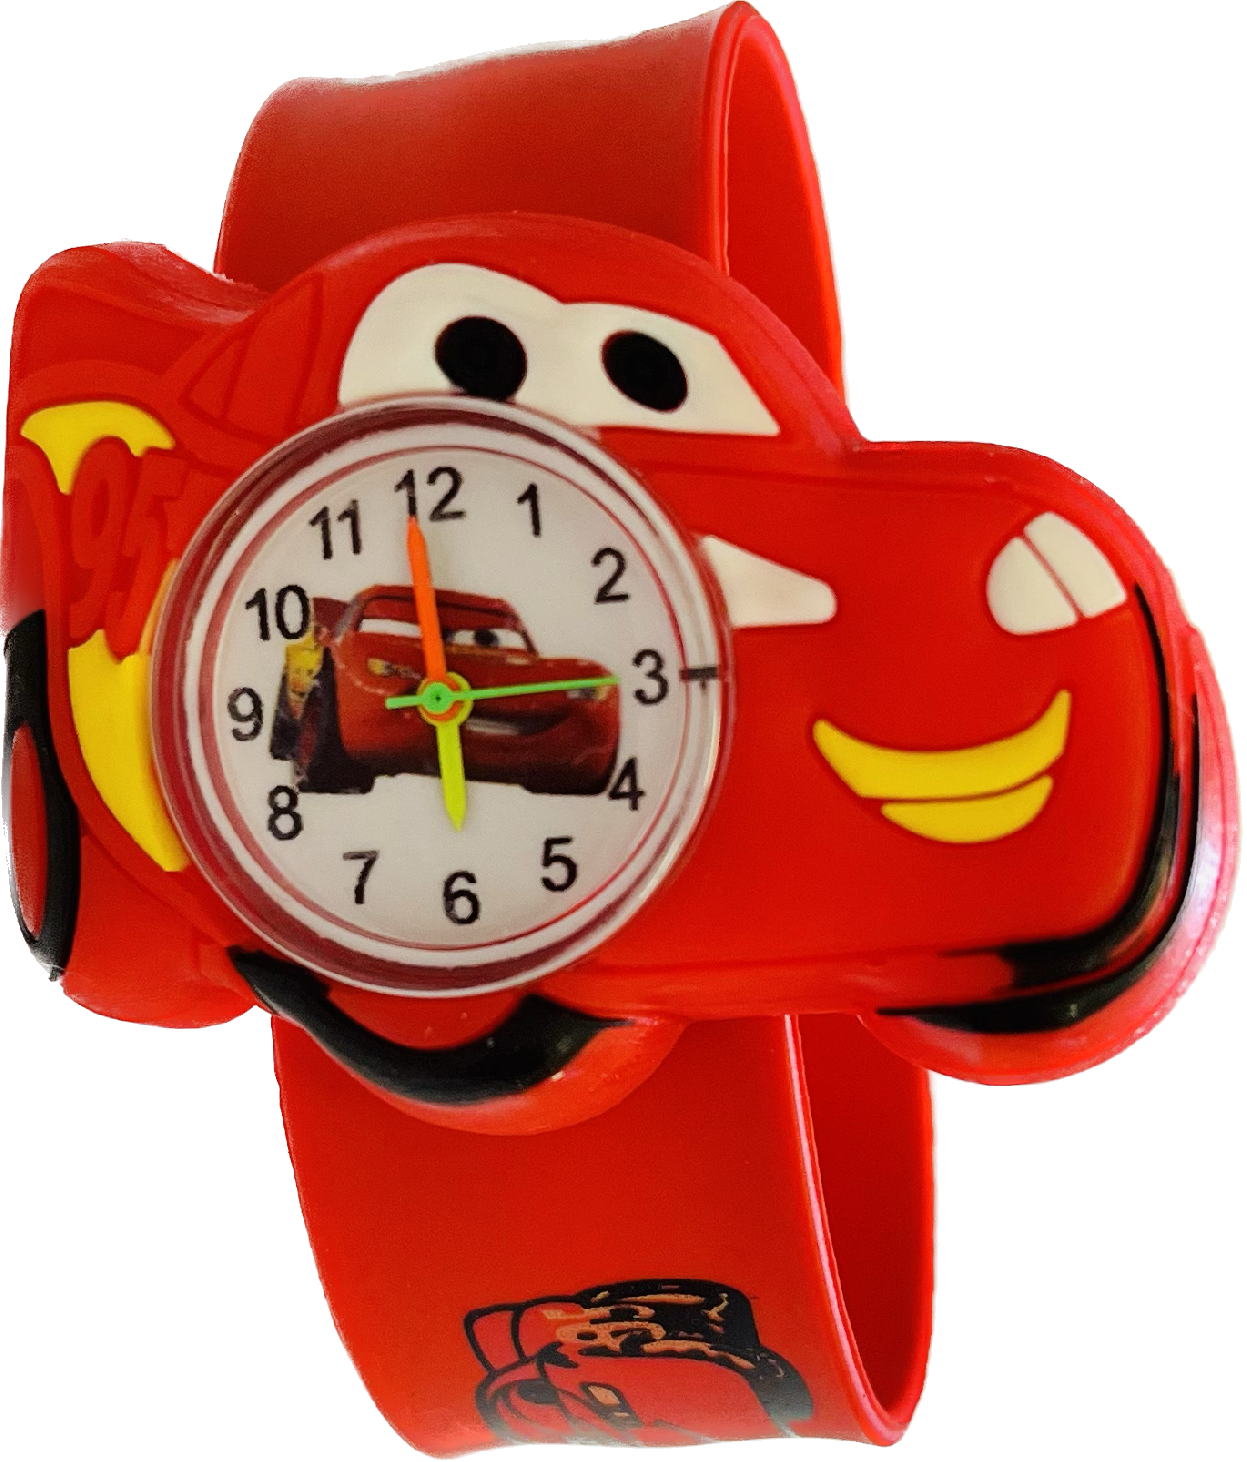 Načančaná.cz Dětské červené hodinky Auta Blesk McQueen - 2 motivy Motiv: A